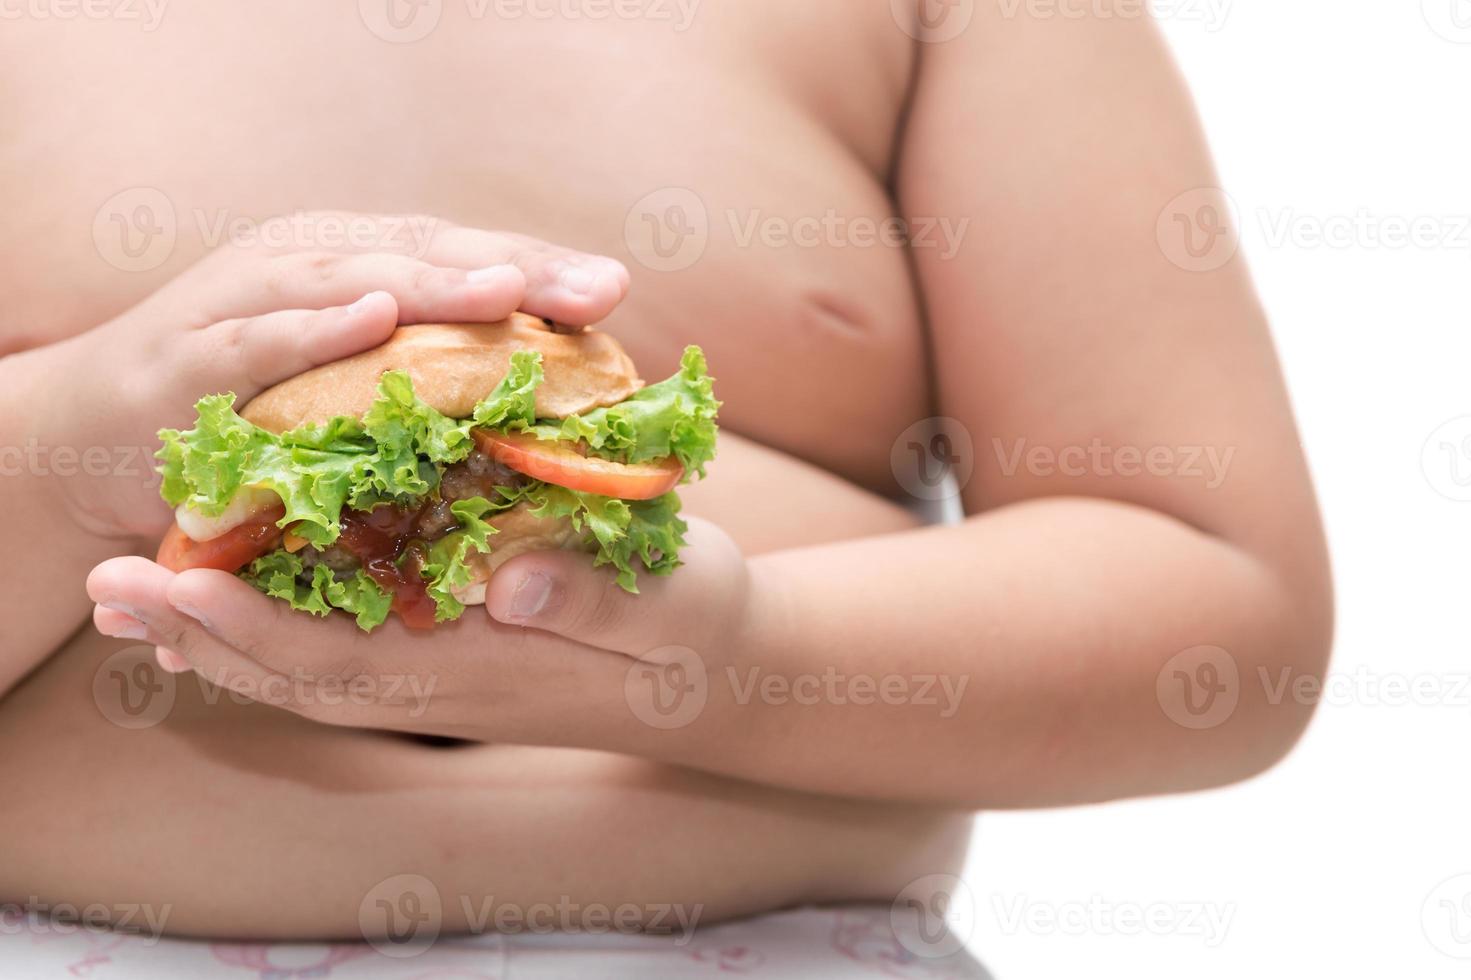 fläsk hamburgare på fet fett pojke hand bakgrund isolerat foto